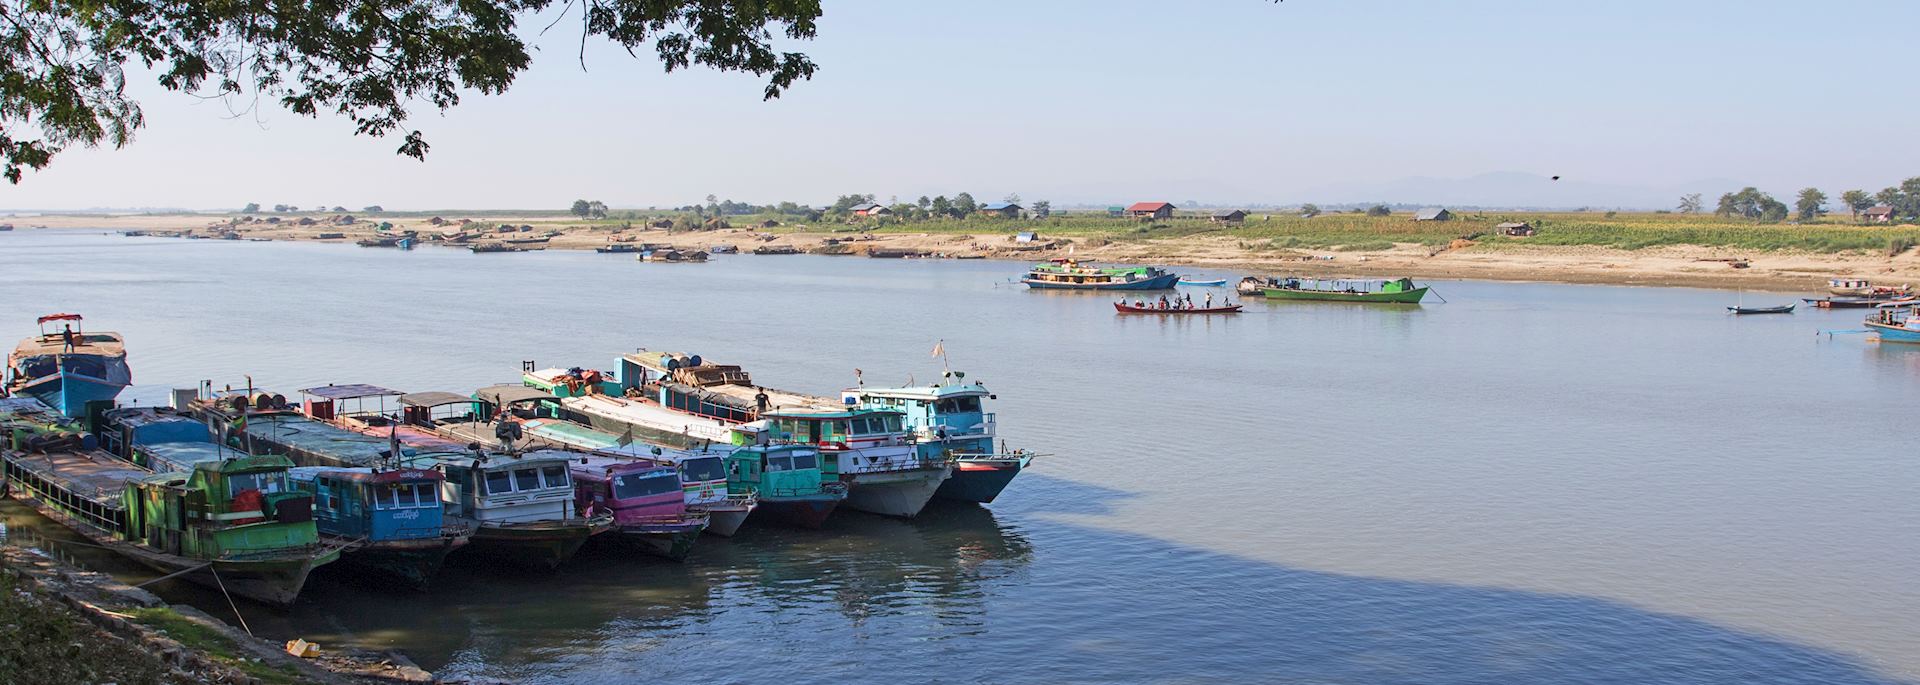 Boats docked in Bhamo